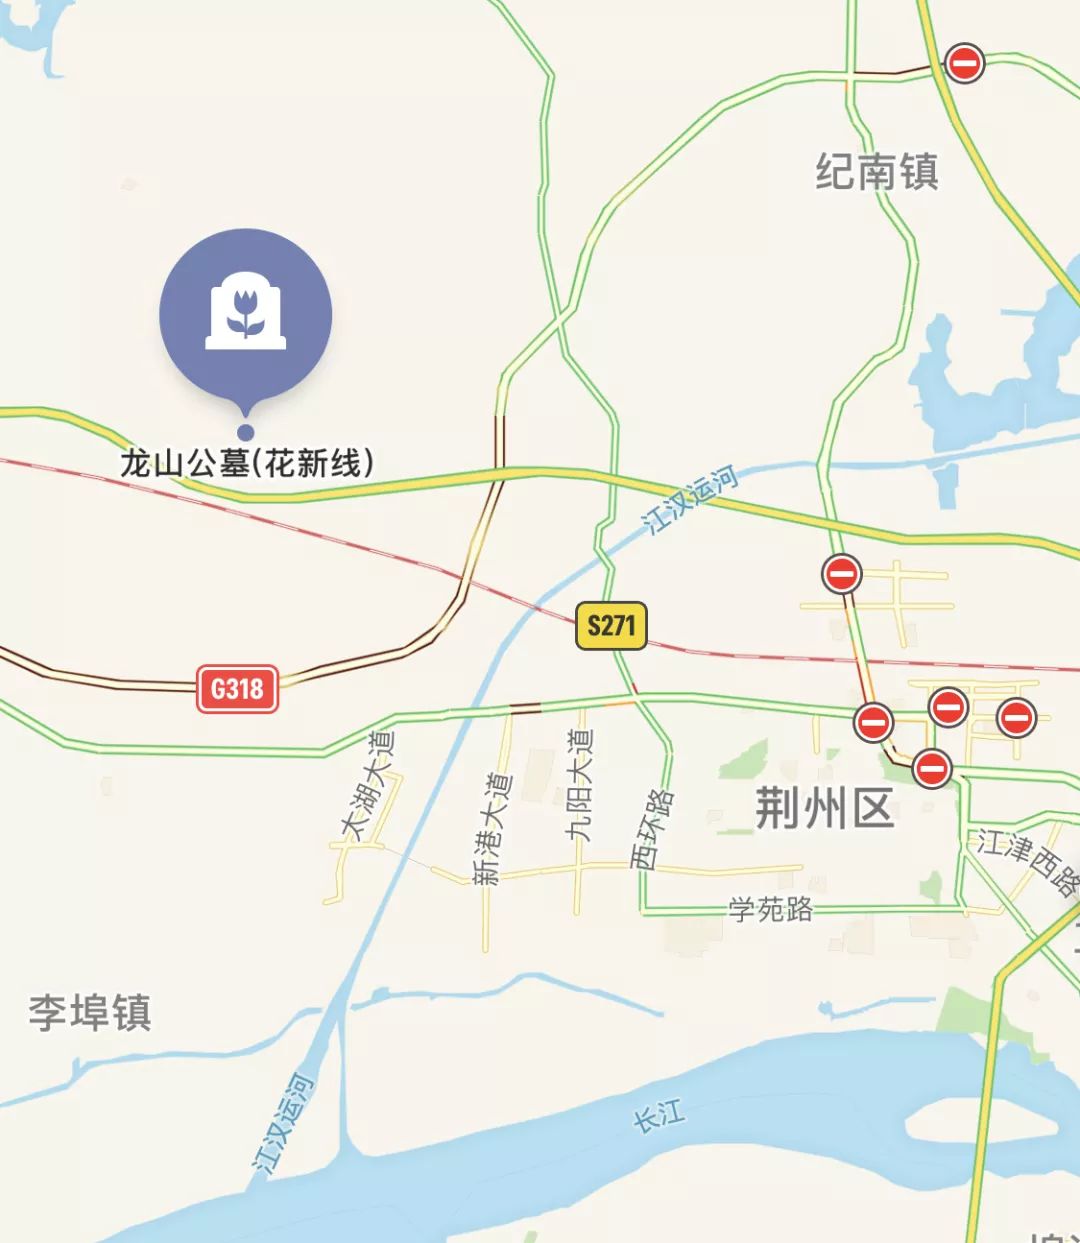 荆州18路公交车路线图图片